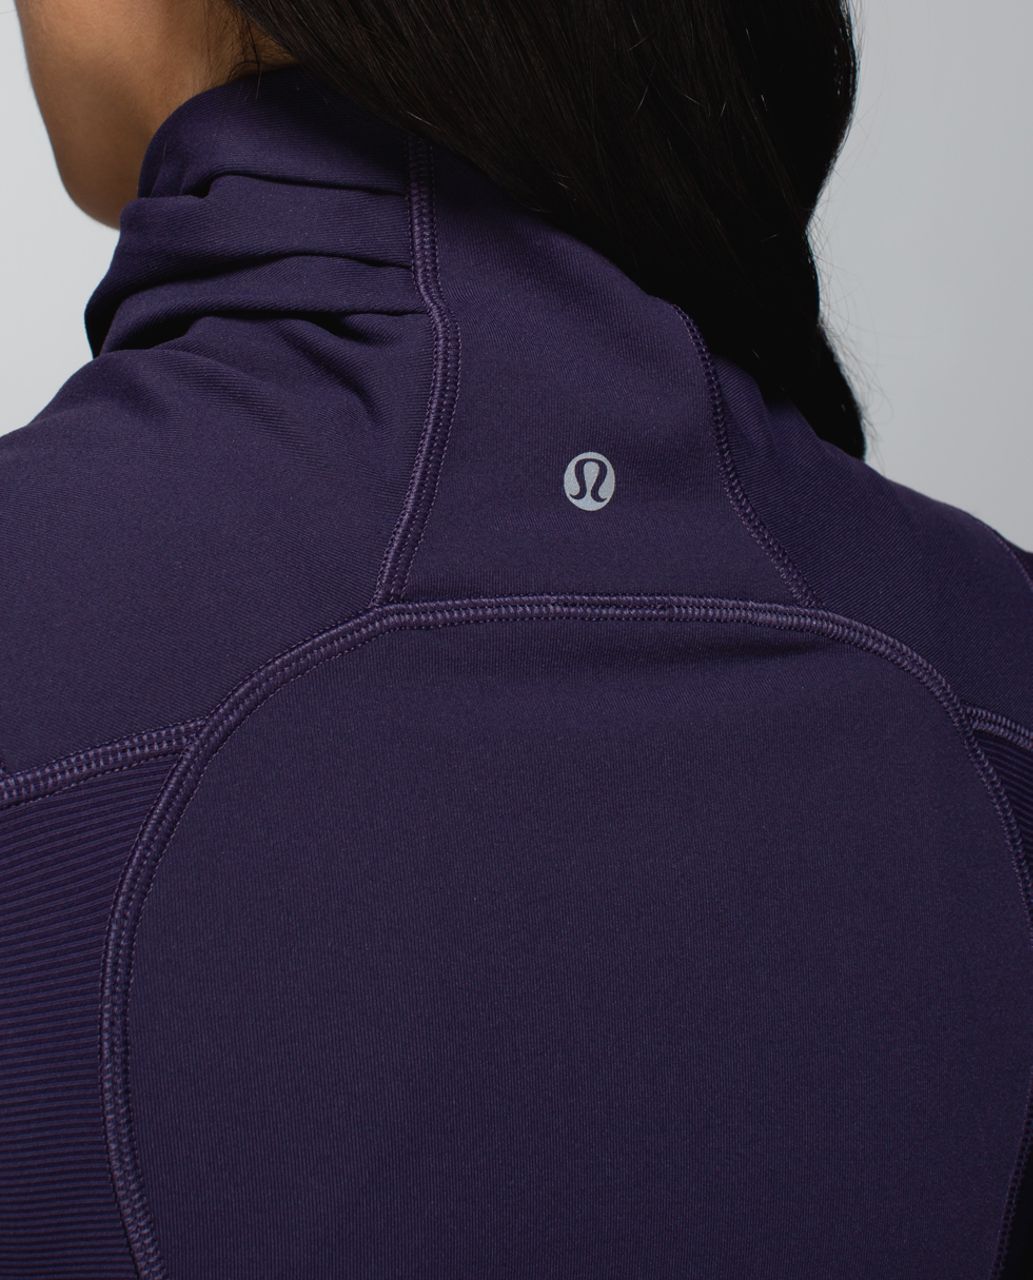 lululemon double zipper jacket